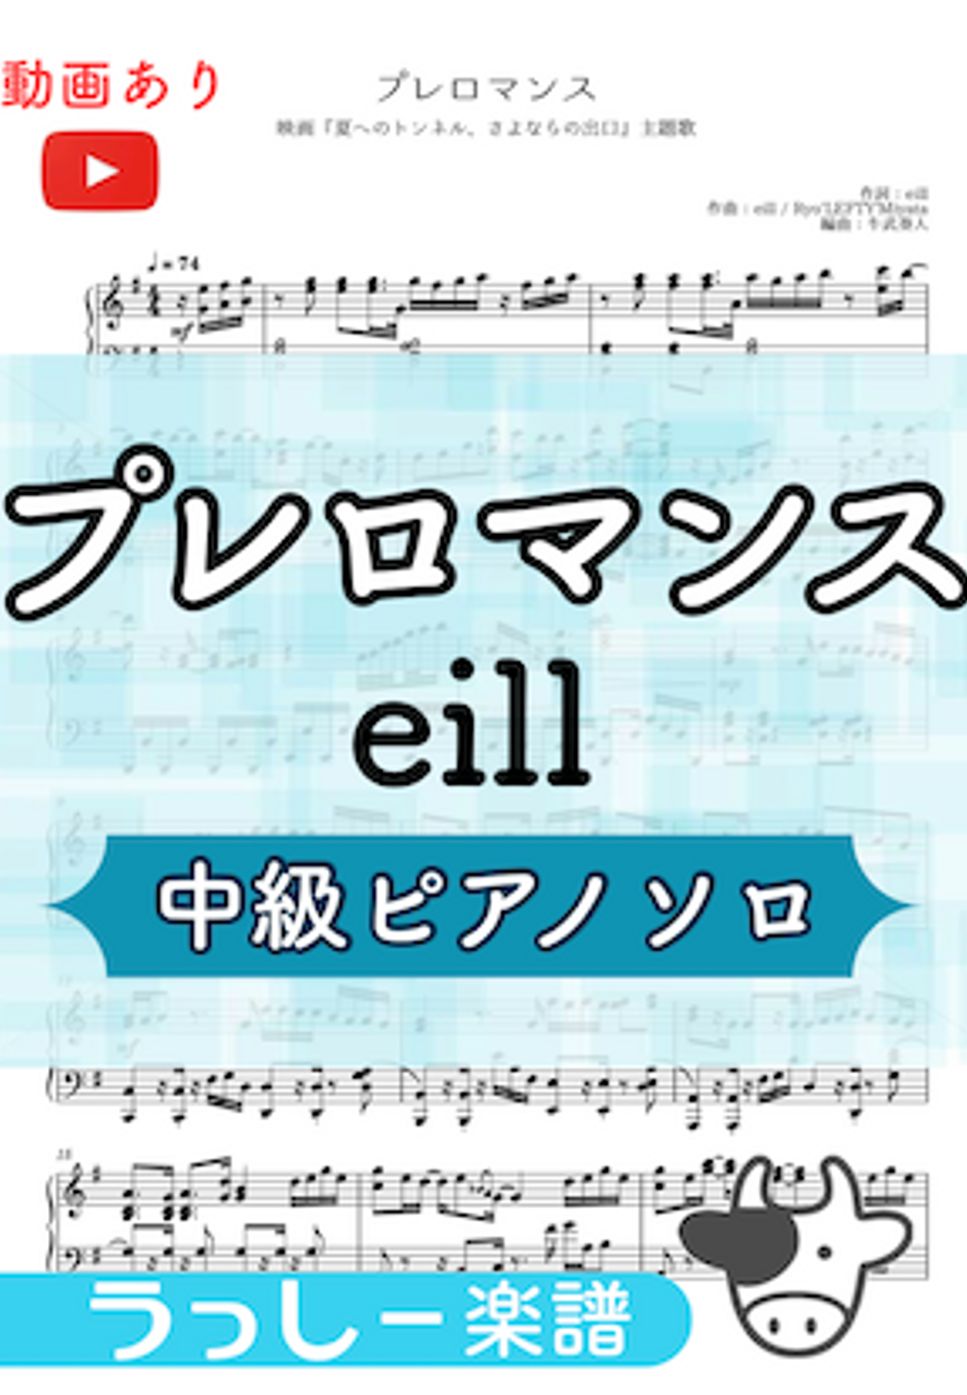 eill - プレロマンス (夏へのトンネル、さよならの出口/中級ピアノ) by 牛武奏人